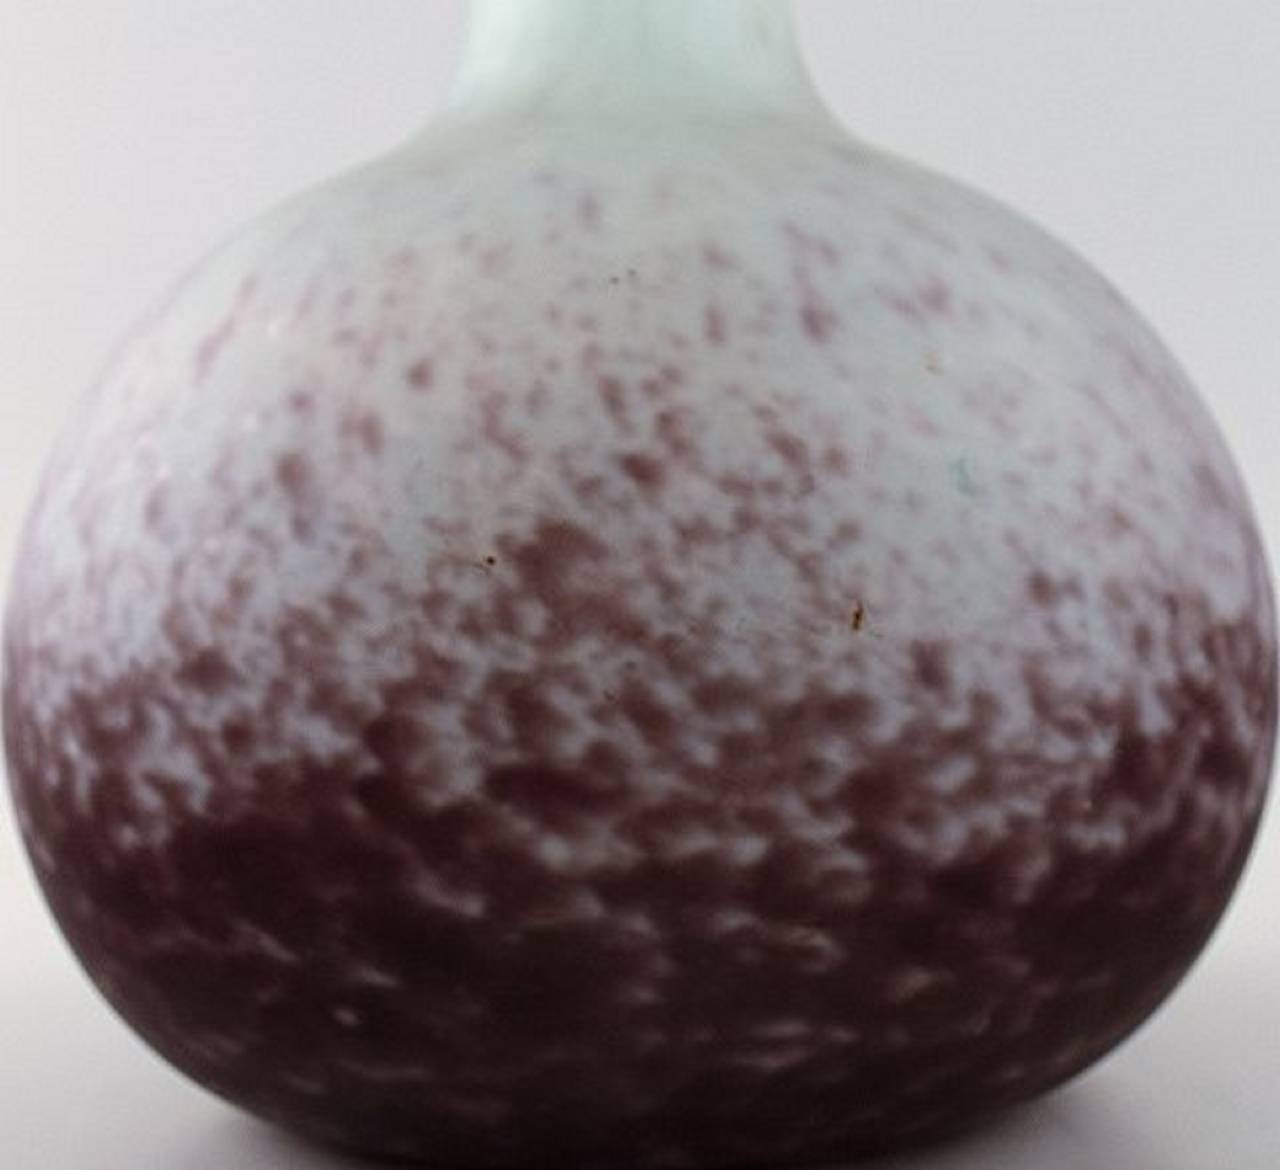 Monumental Daum, Nancy. Vase Soliflores en verre d'art dans des nuances de violette et de bleu.
Signé. 53 cm de hauteur. En parfait état.
Vraisemblablement non signé.